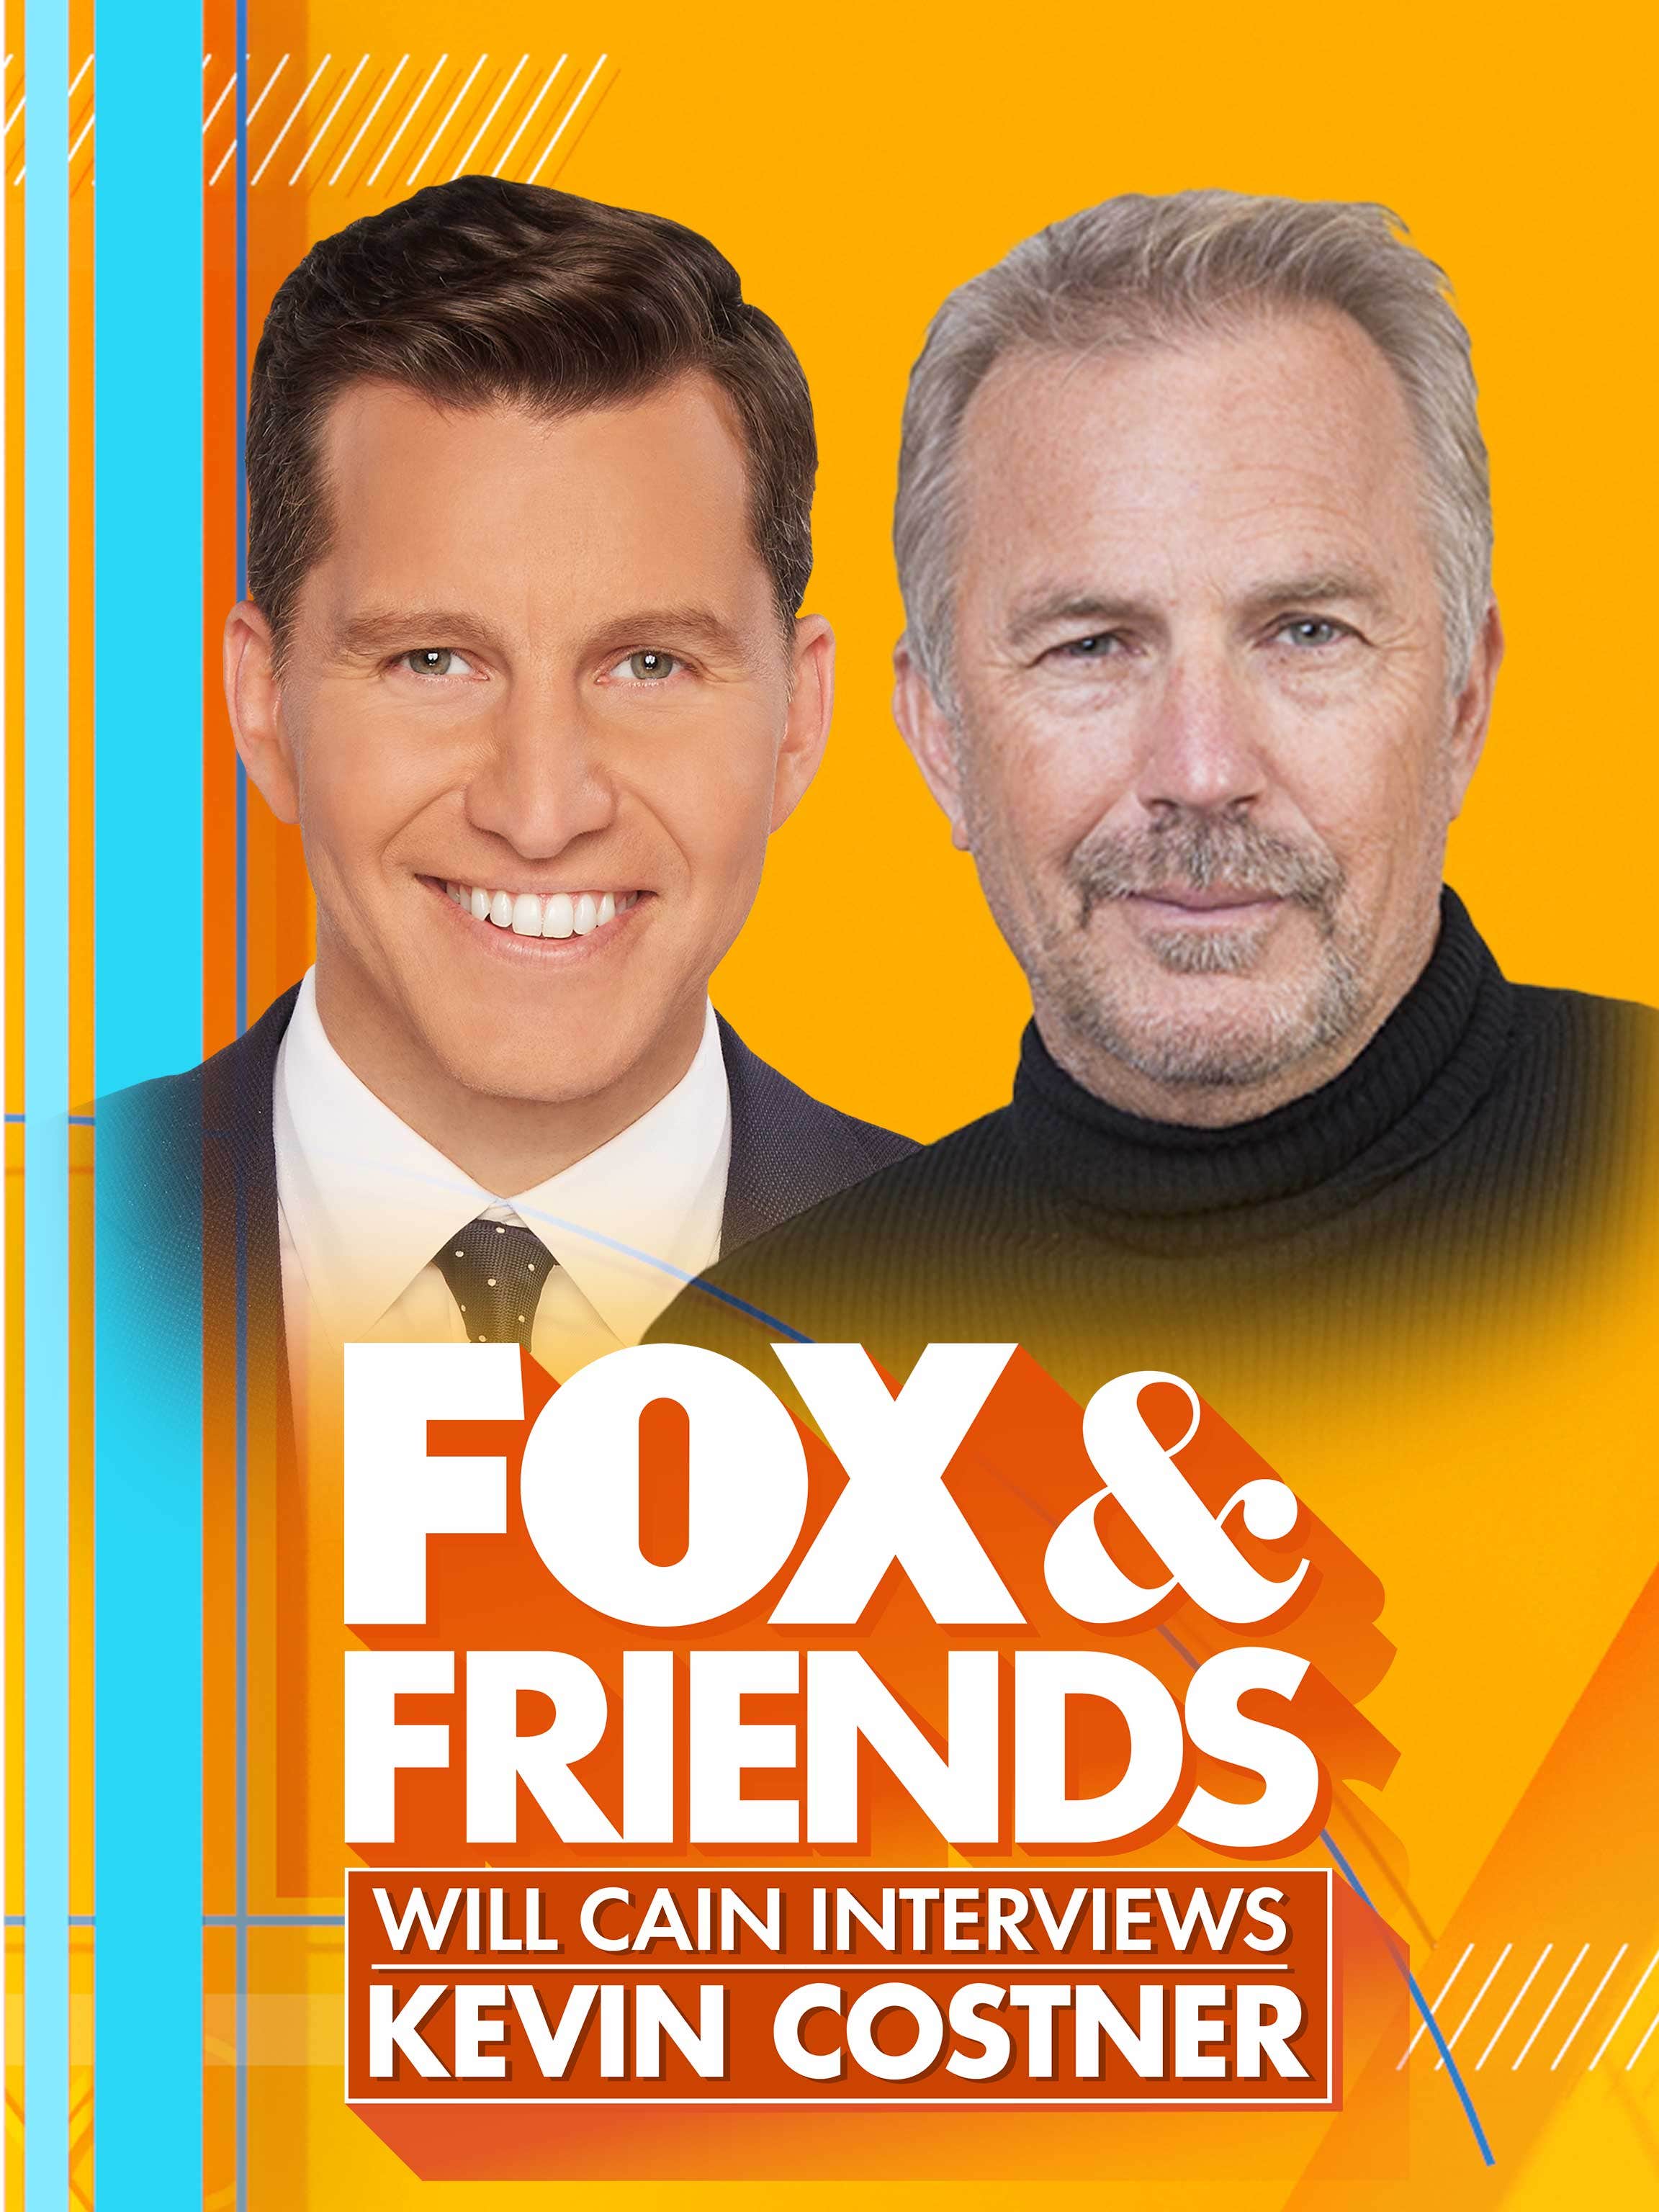 A Fox & Friends Interview dcg-mark-poster